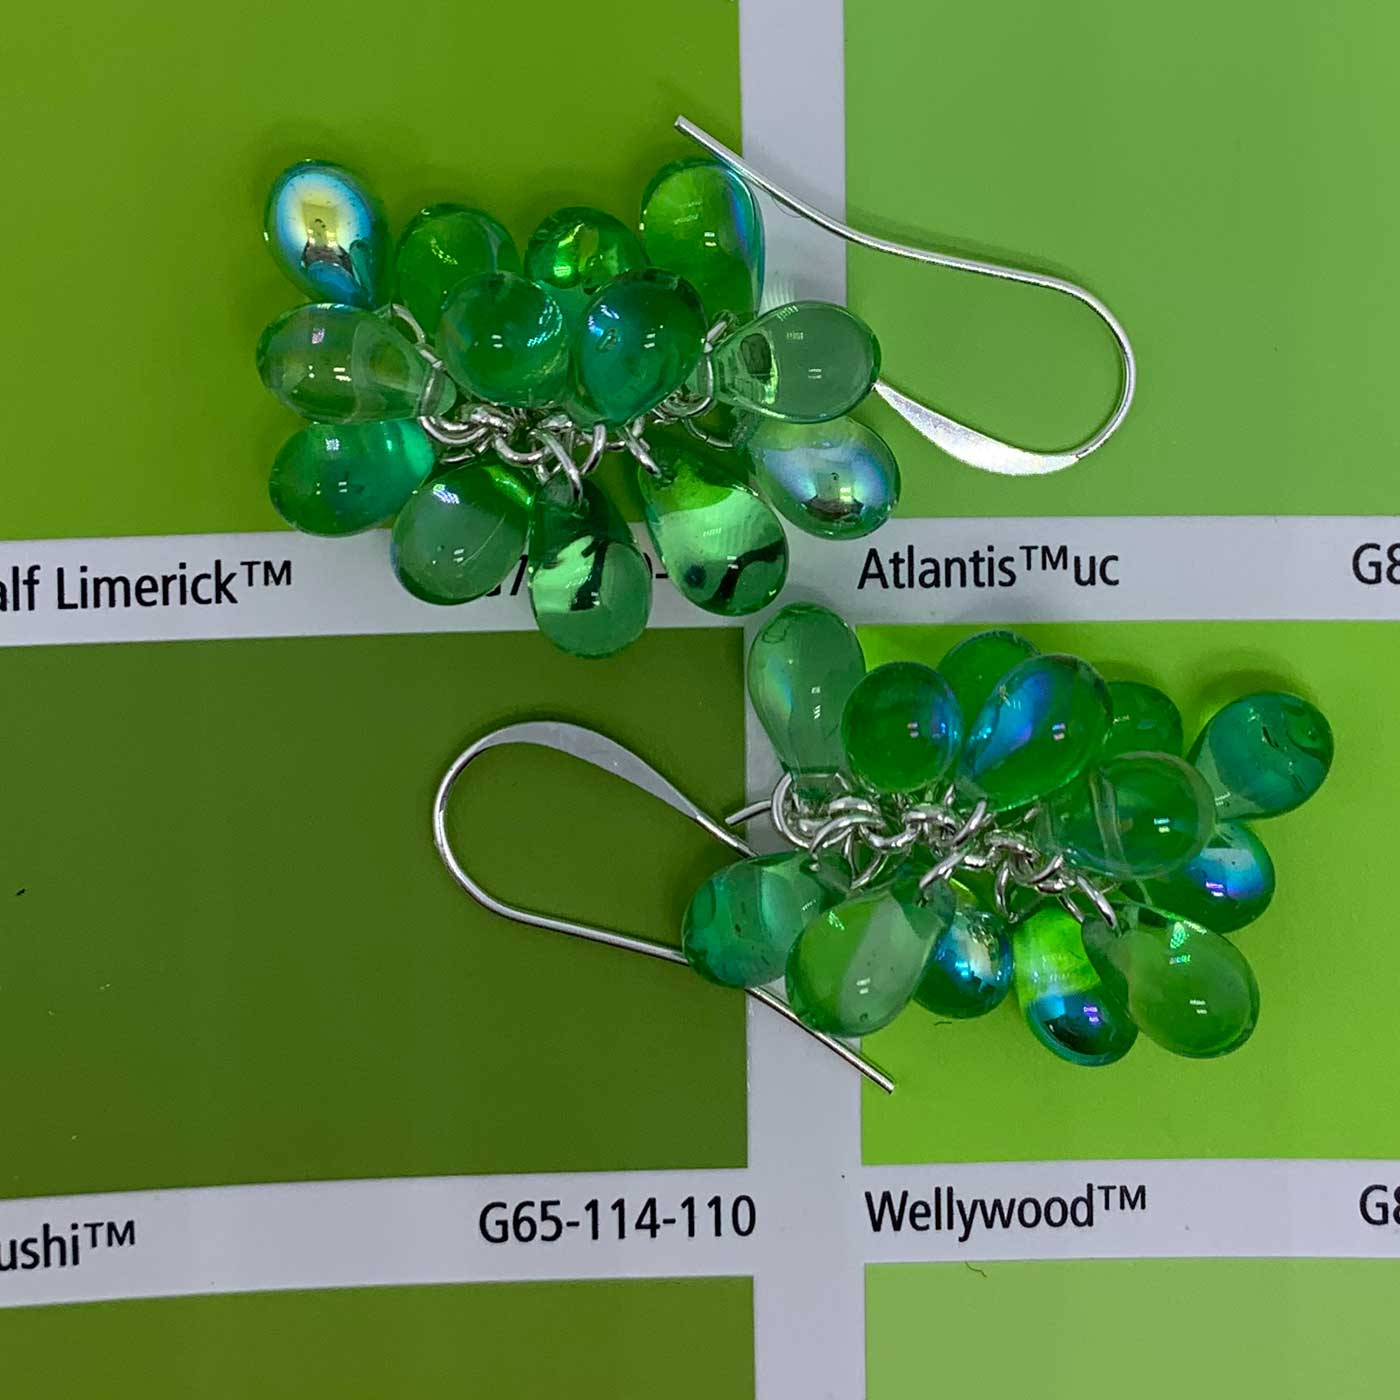 green crystal drop silver earrings